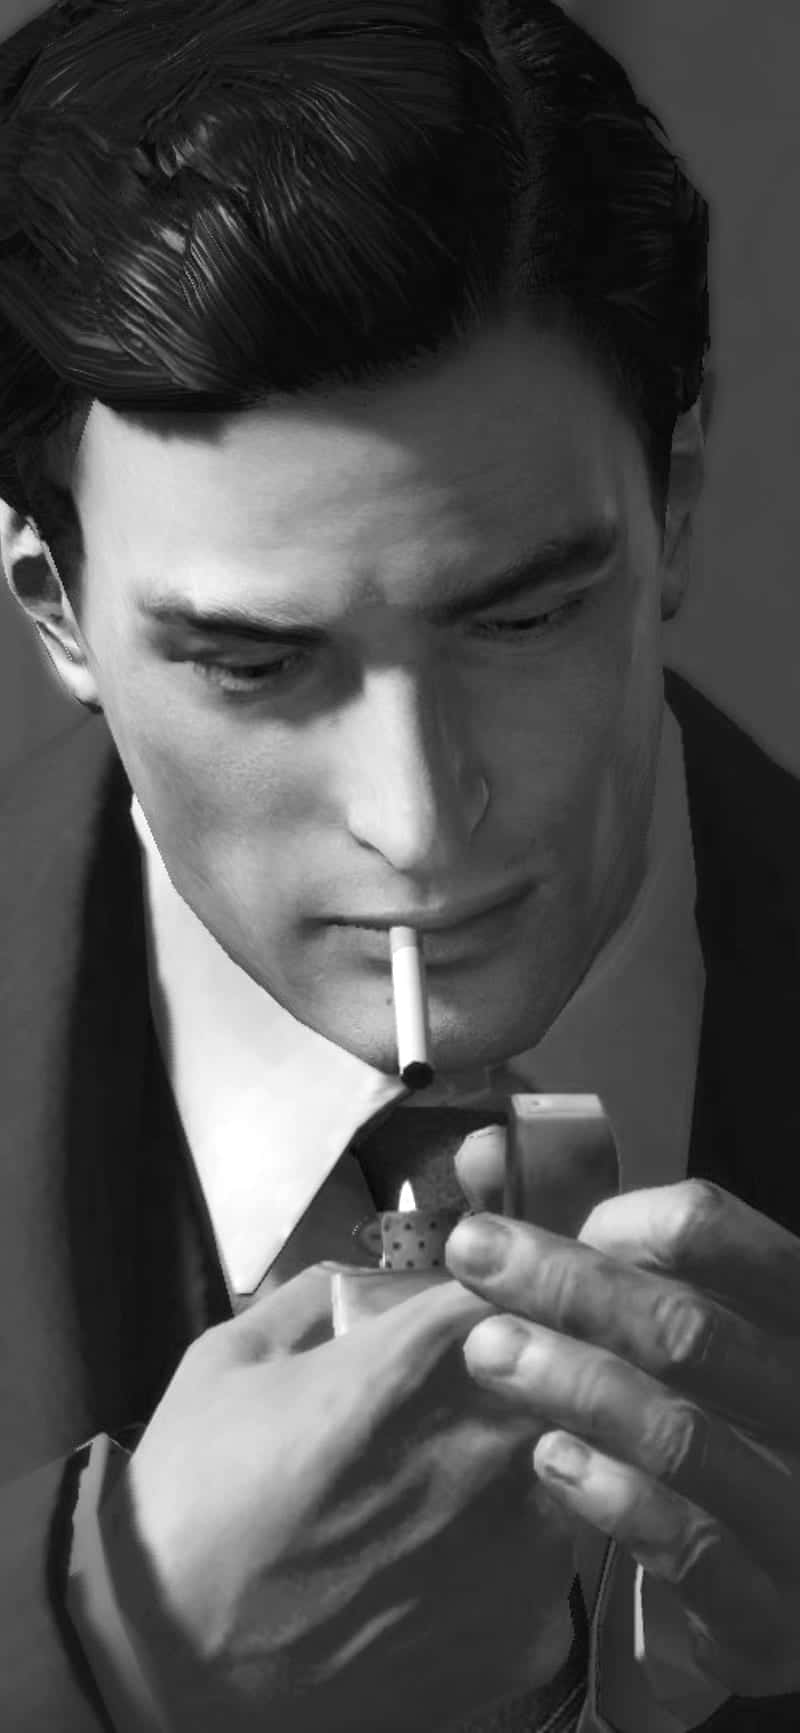 En mand i jakkesæt, der ryger en cigaret Wallpaper